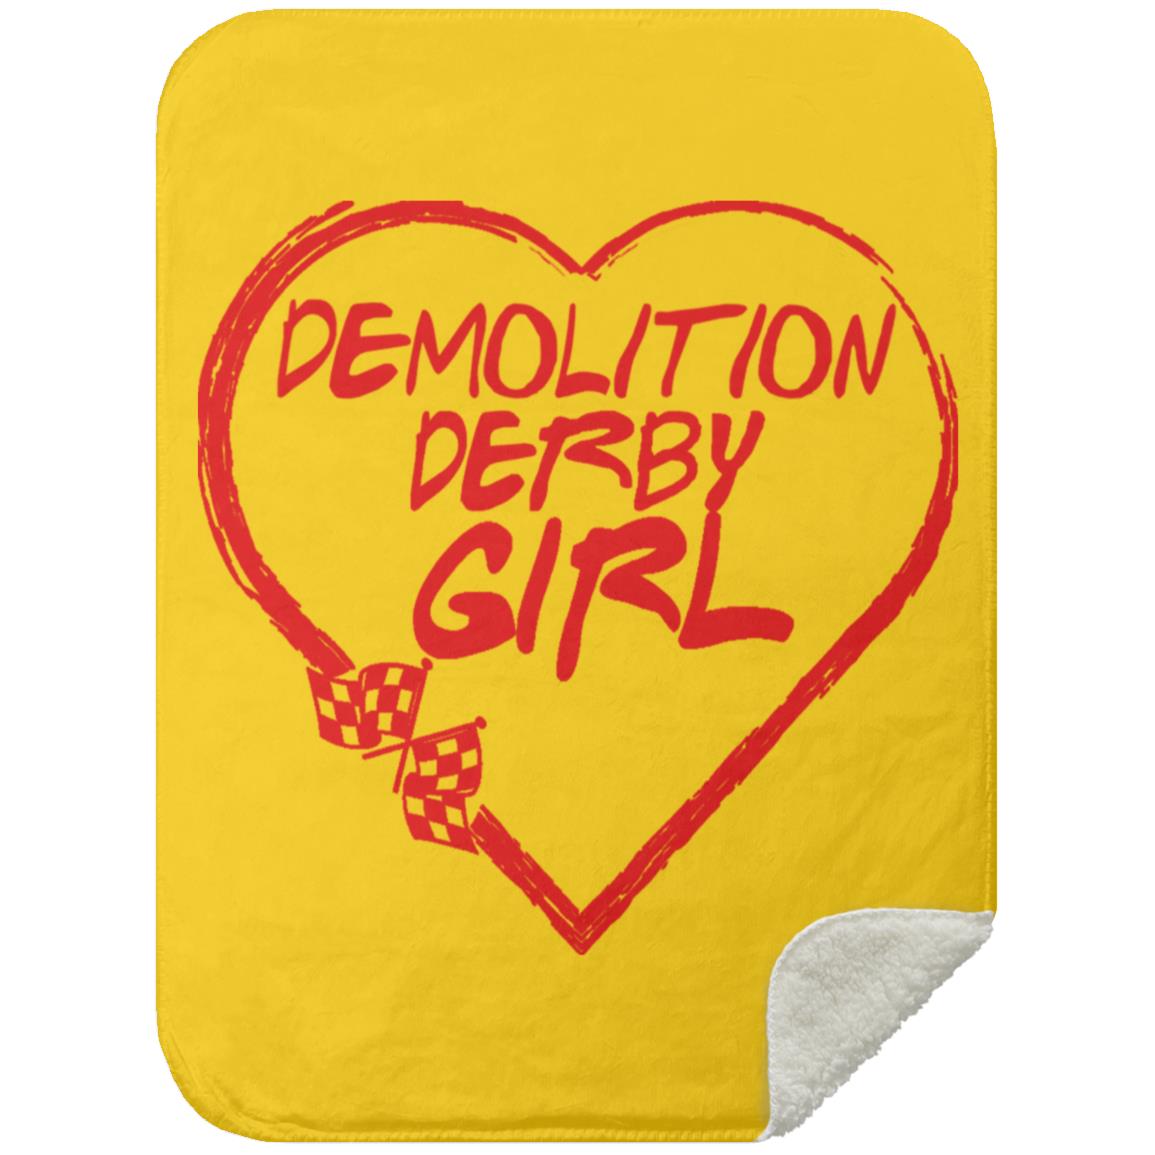 Demolition Derby Girl Heart Mink Sherpa Blanket 30x40